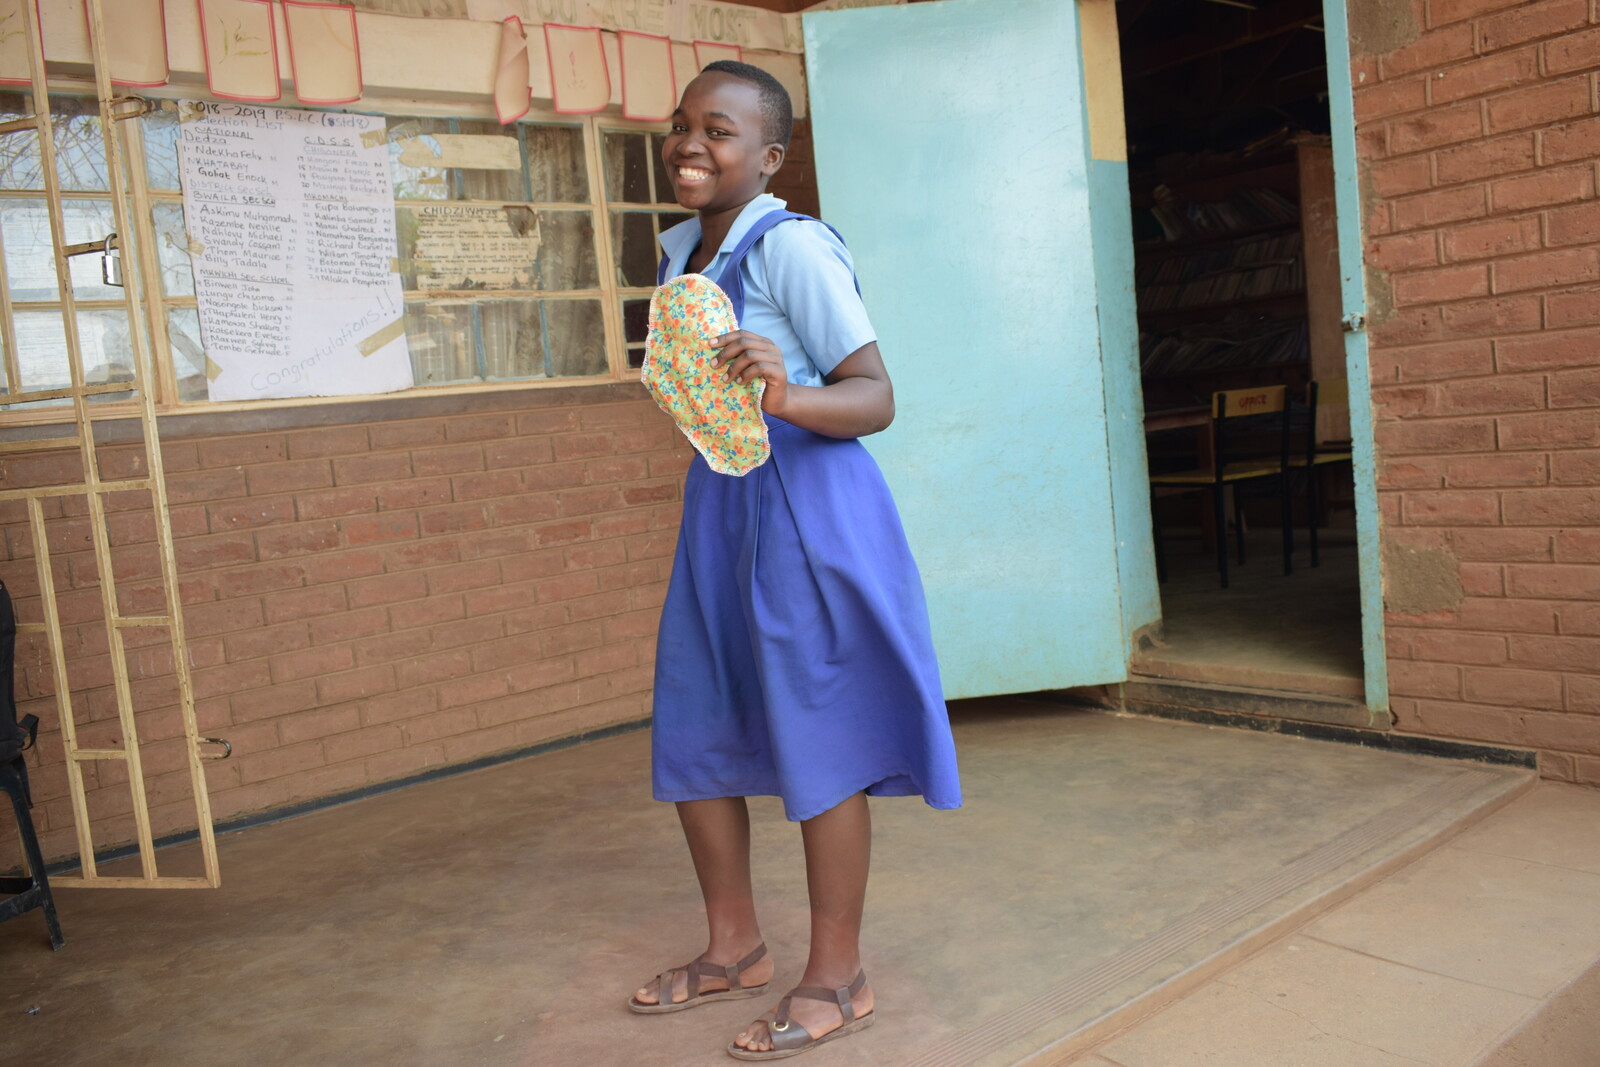 Heute ist Chisomo sichtlich erleichtert und besucht gerne wieder ihre Schule Mtsiriza nahe Malawis Hauptstadt Lilongwe